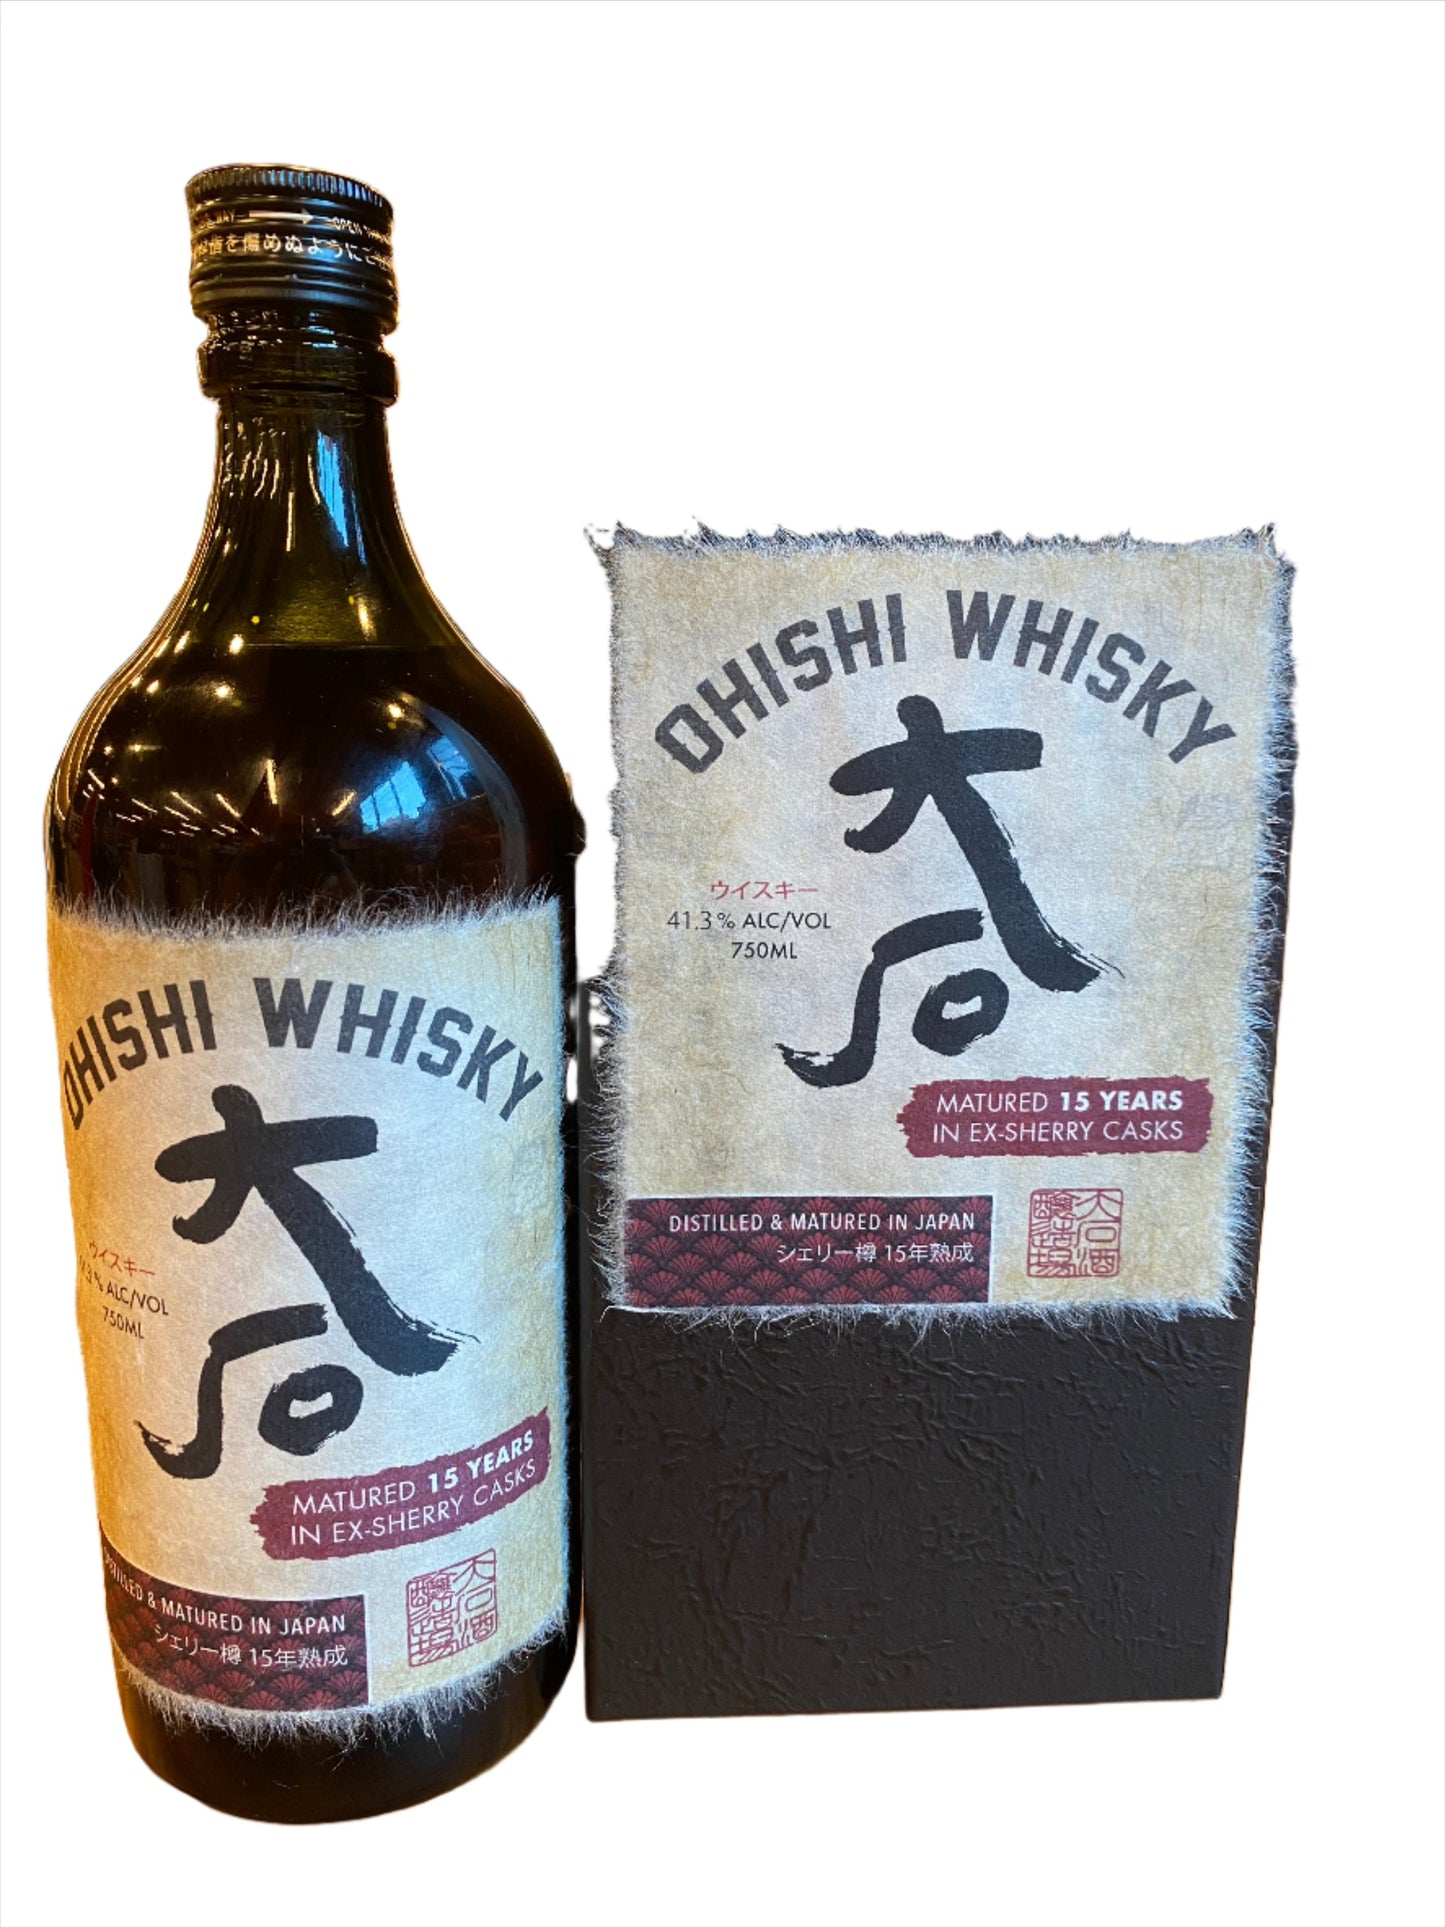 Ohishi Whisky aged 15 Year Sherry Cask, 750 ML